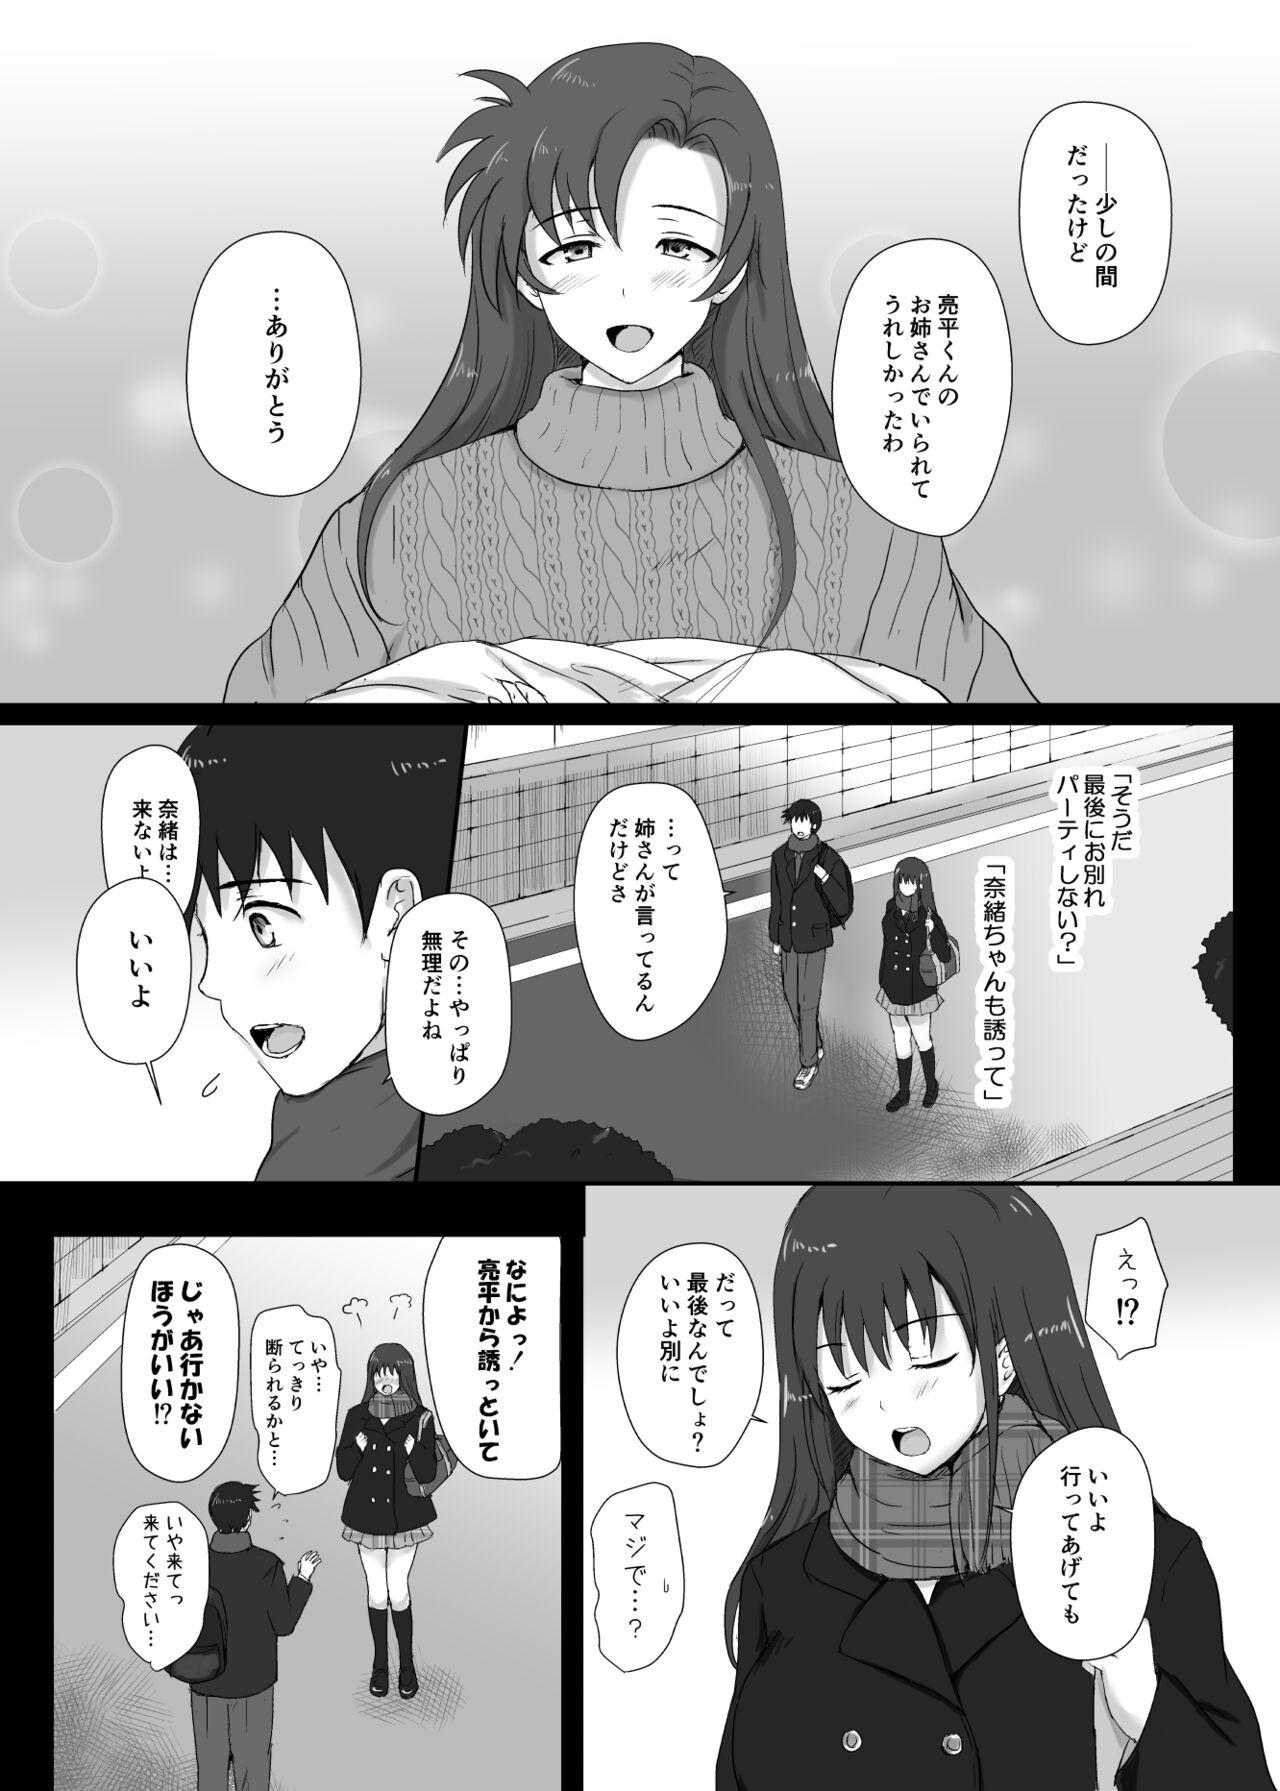 Cutie 僕と三姉妹+1 - Original Behind - Page 12